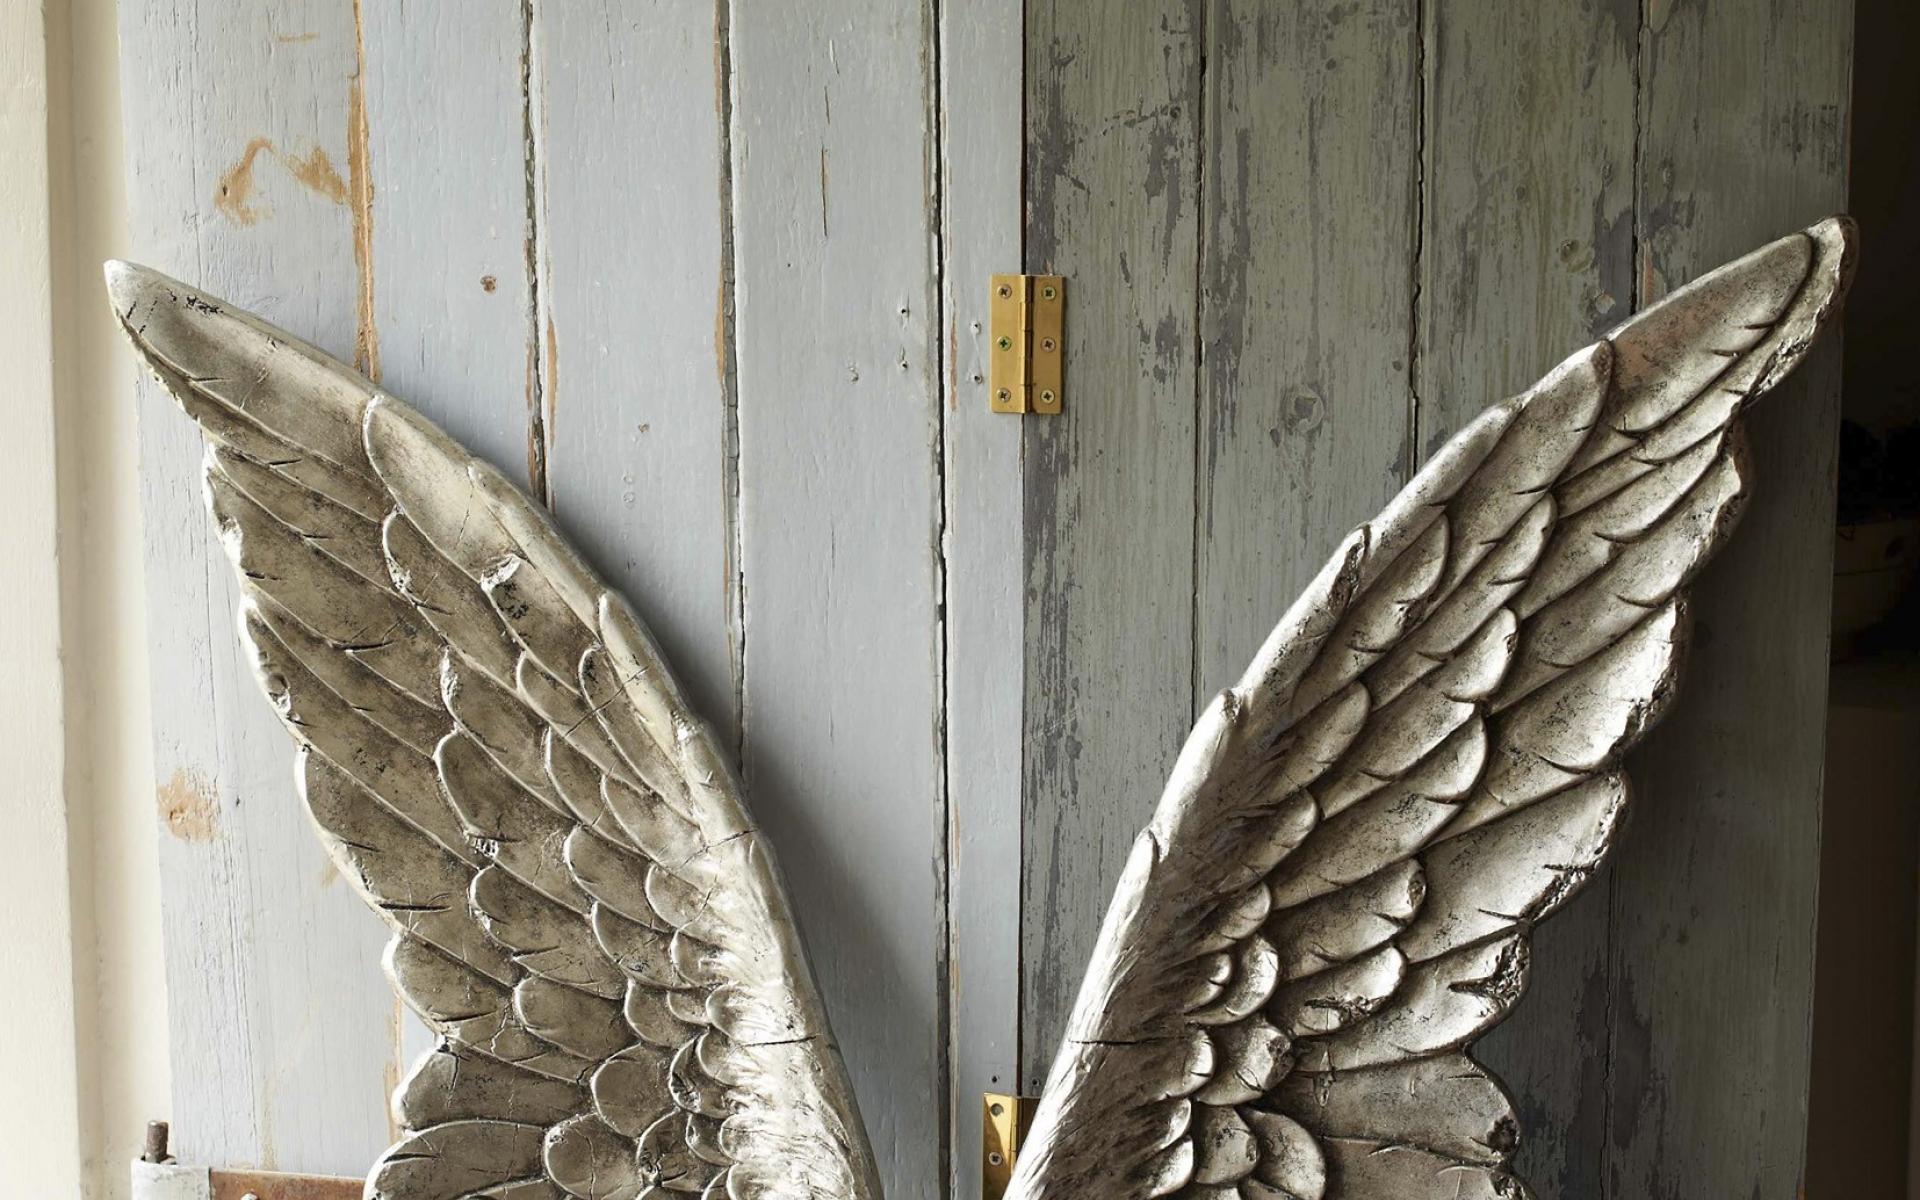 Light angels wings god fly heaven angel wallpaper